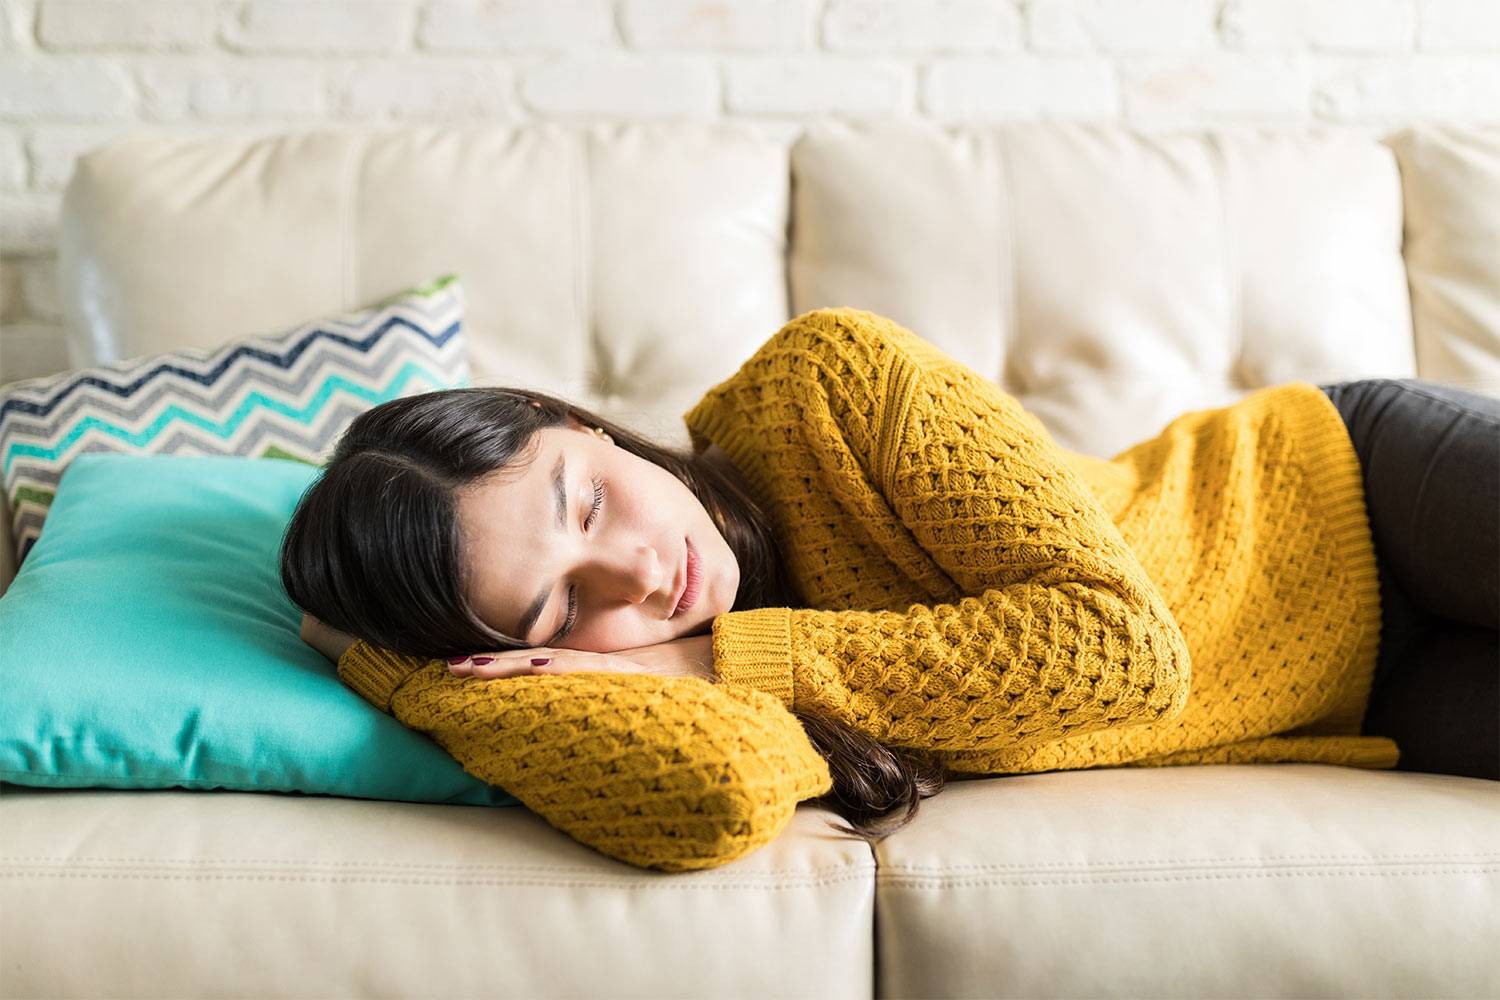 Este ațipitul bun pentru tine? Experții în somn explică avantajele și dezavantajele somnului din timpul zilei